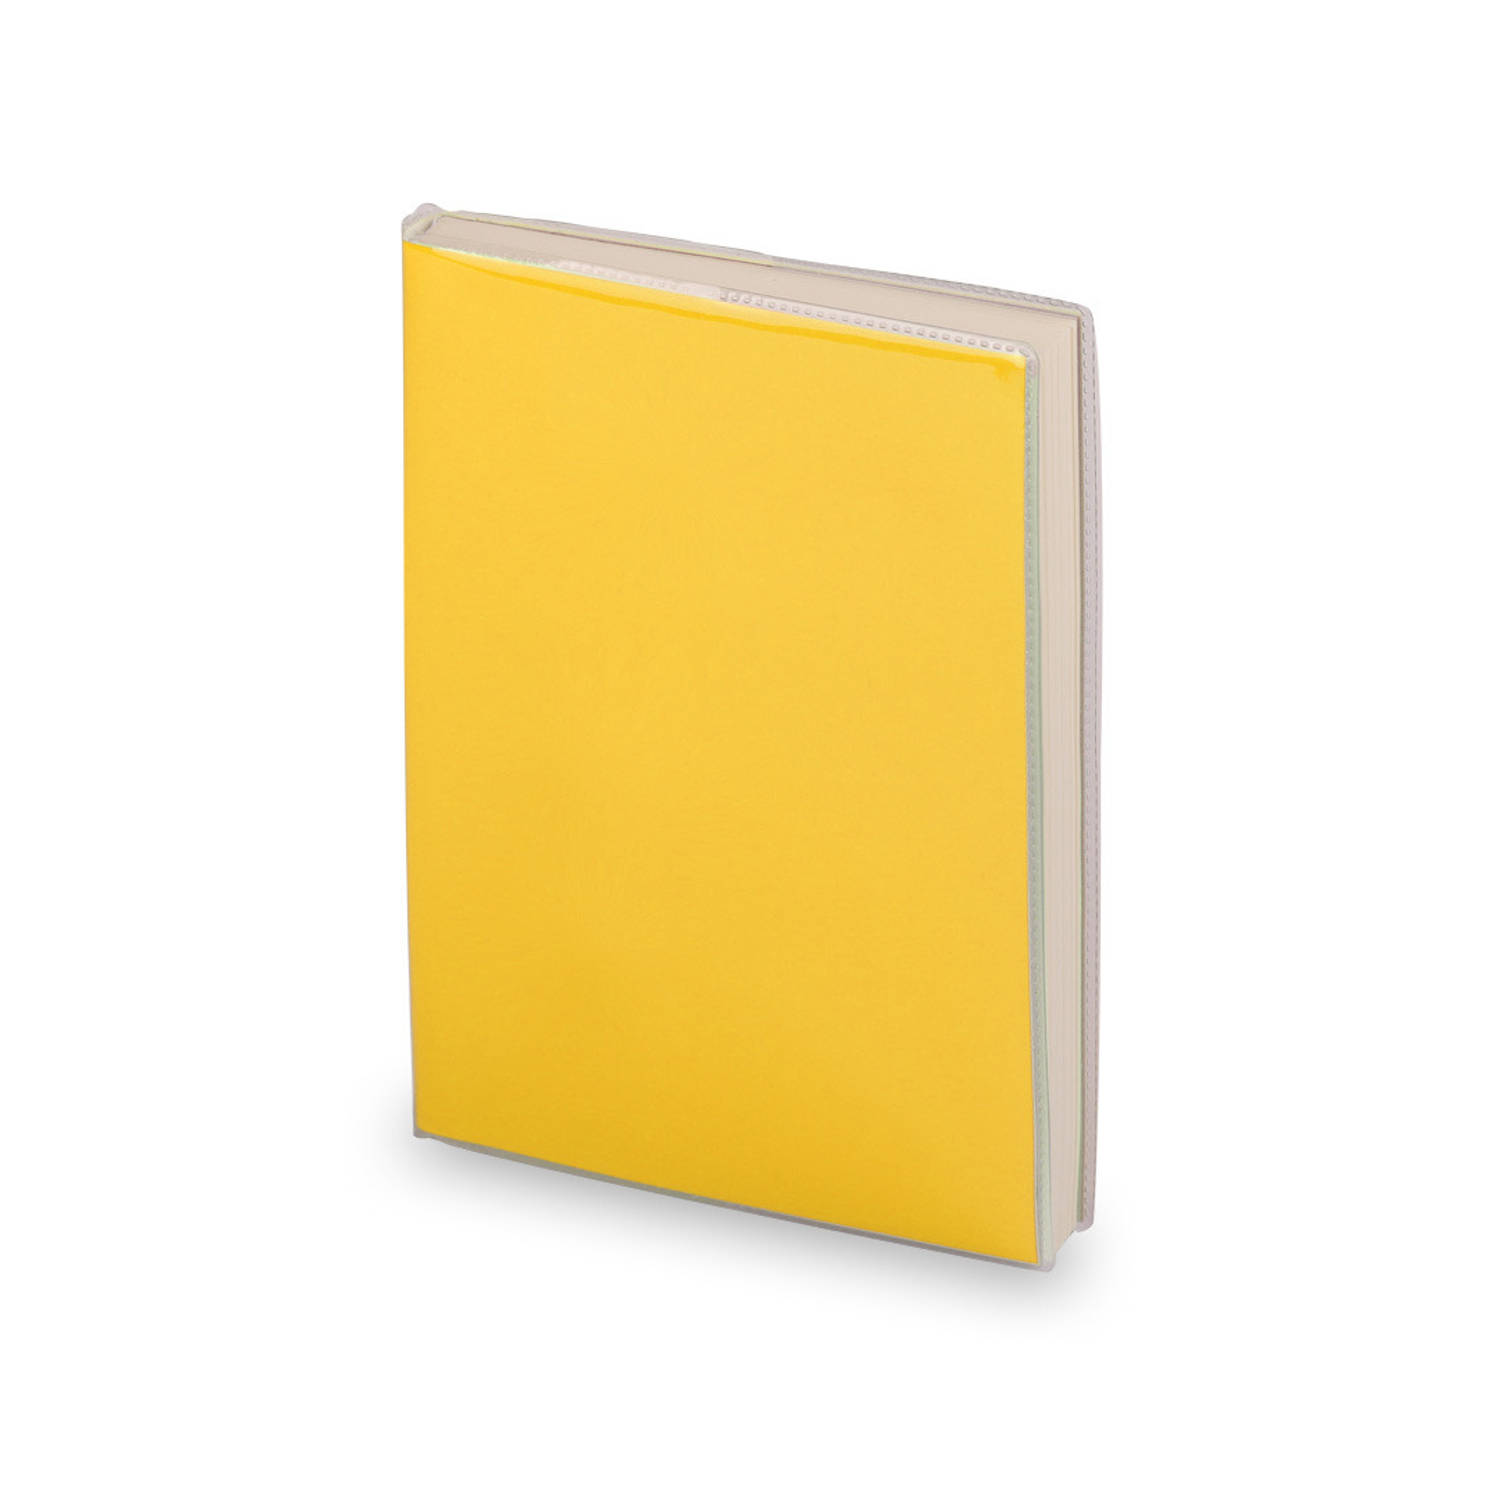 Notitieblokje zachte kaft geel met plastic hoes 10 x 13 cm - Notitieboek